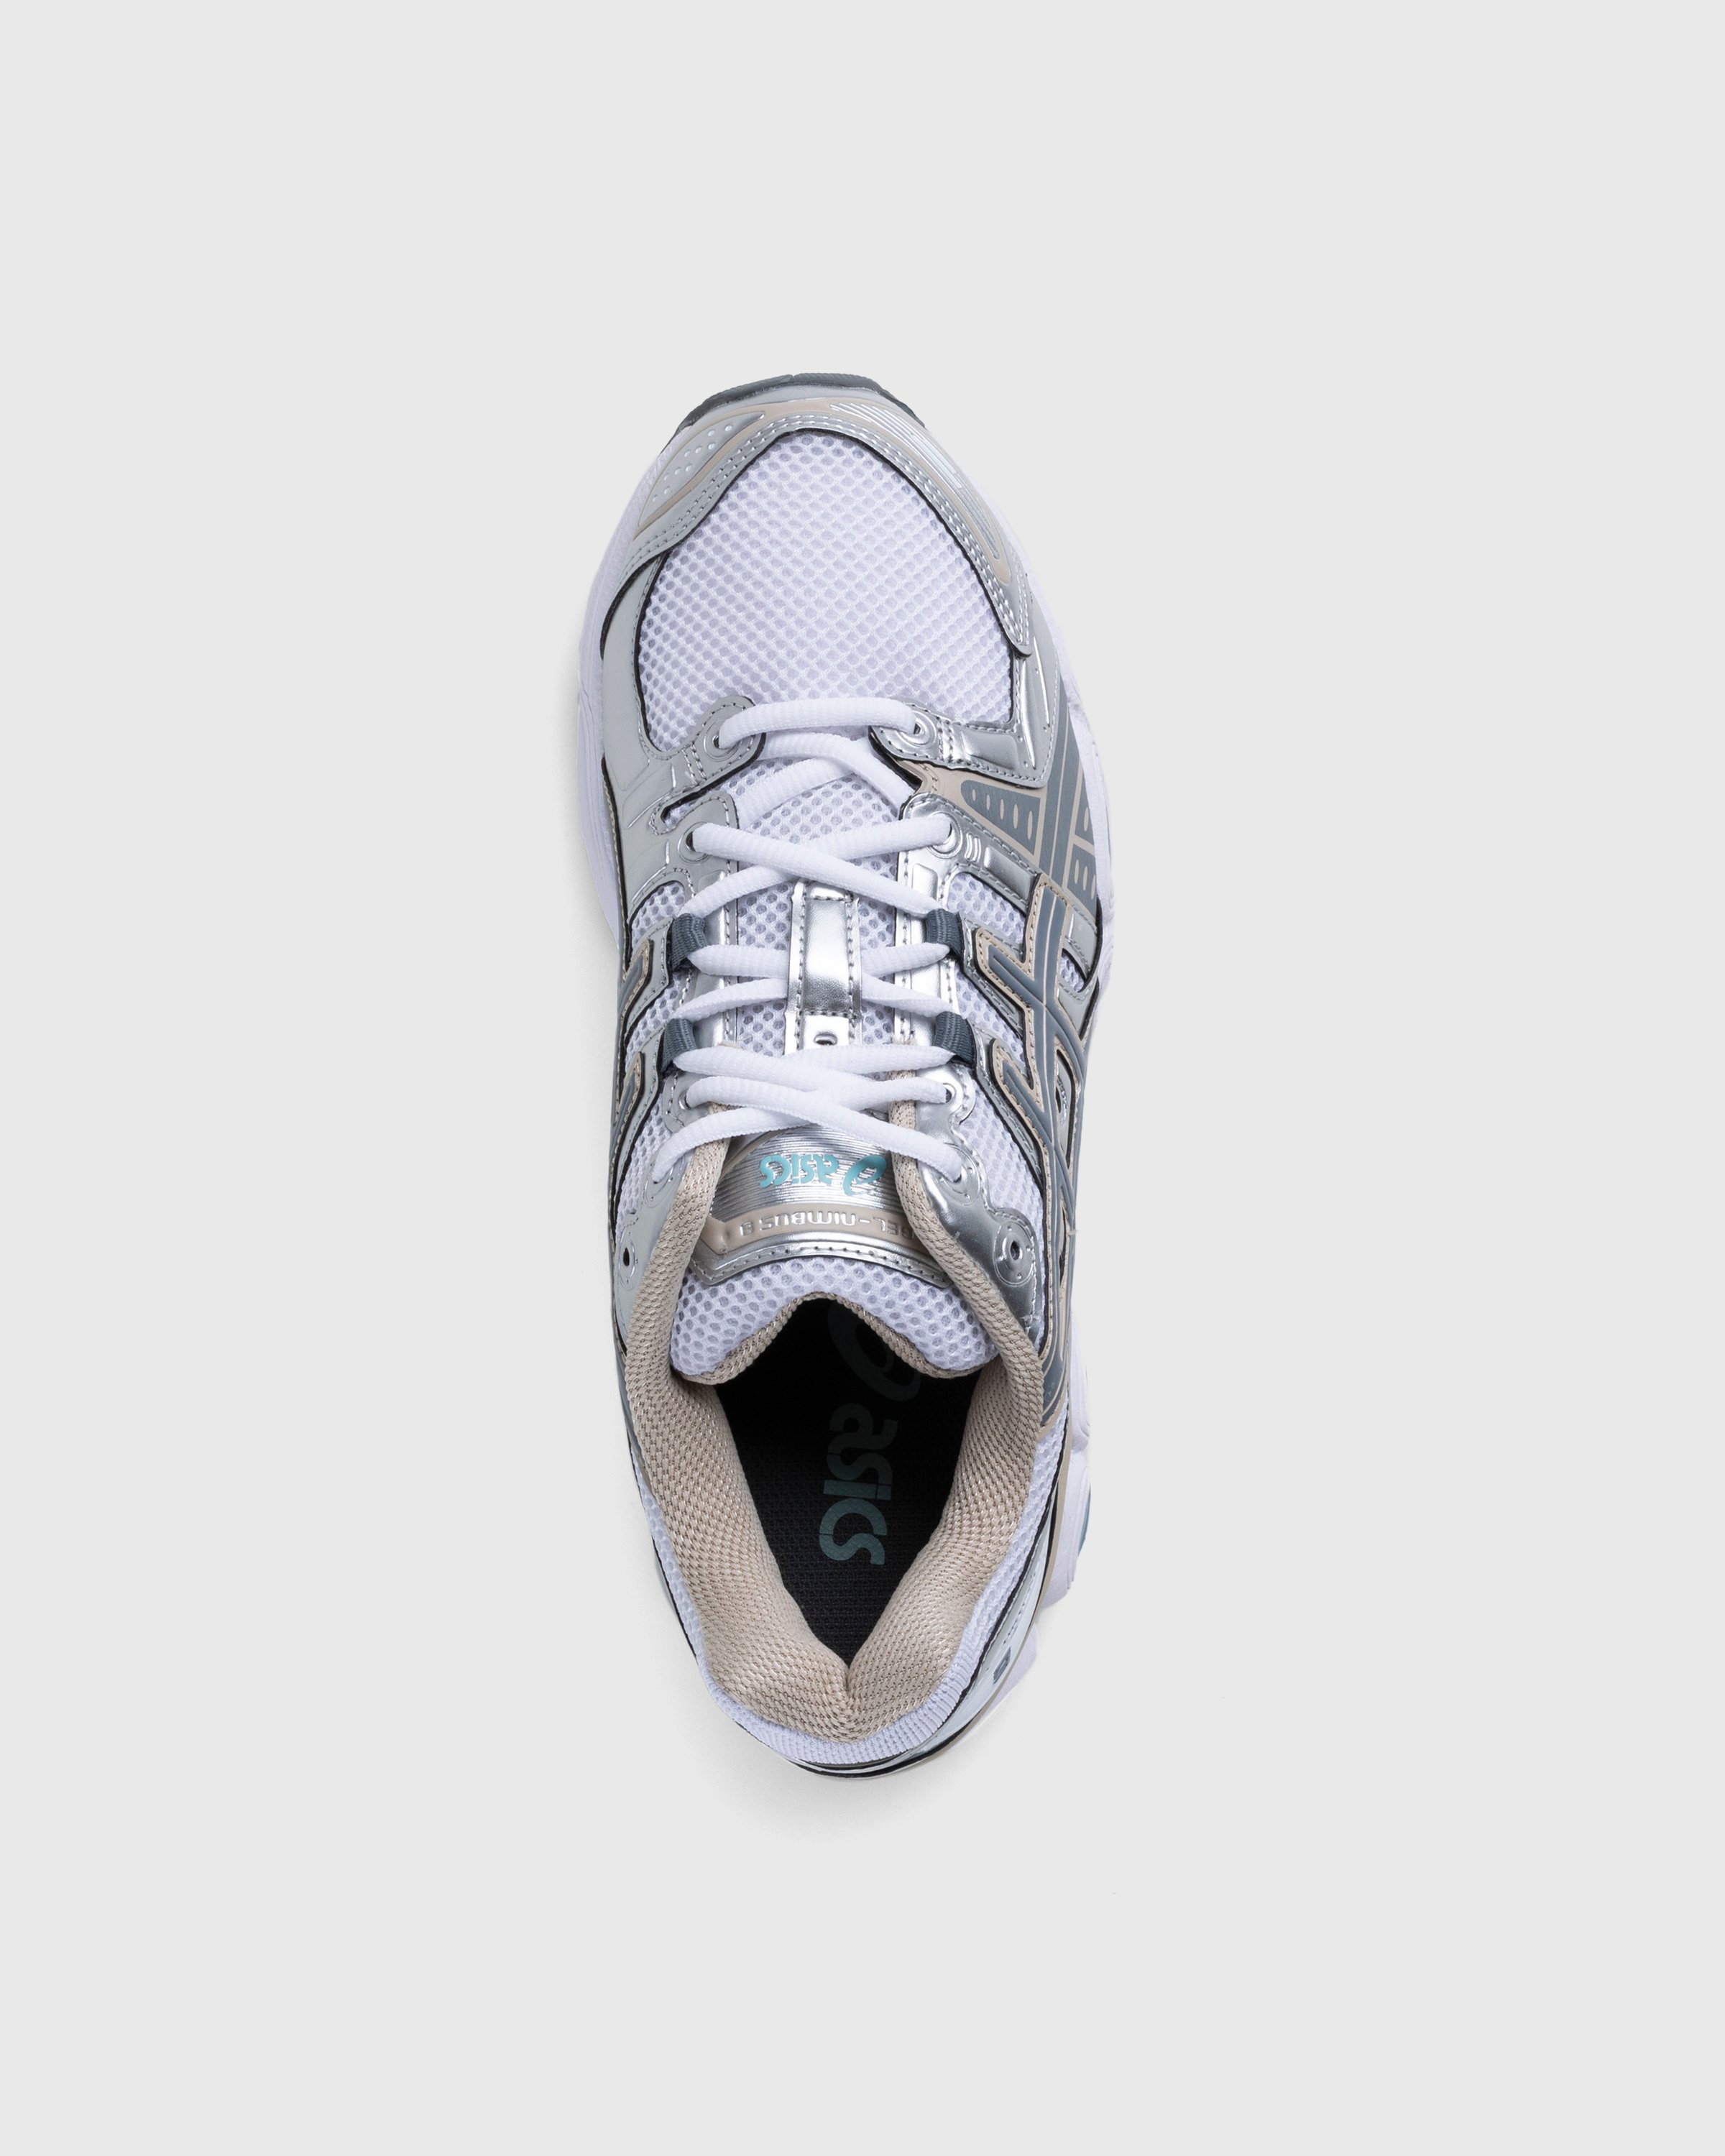 asics - Gel-Nimbus 9 White/Steel Grey - Footwear - White - Image 4